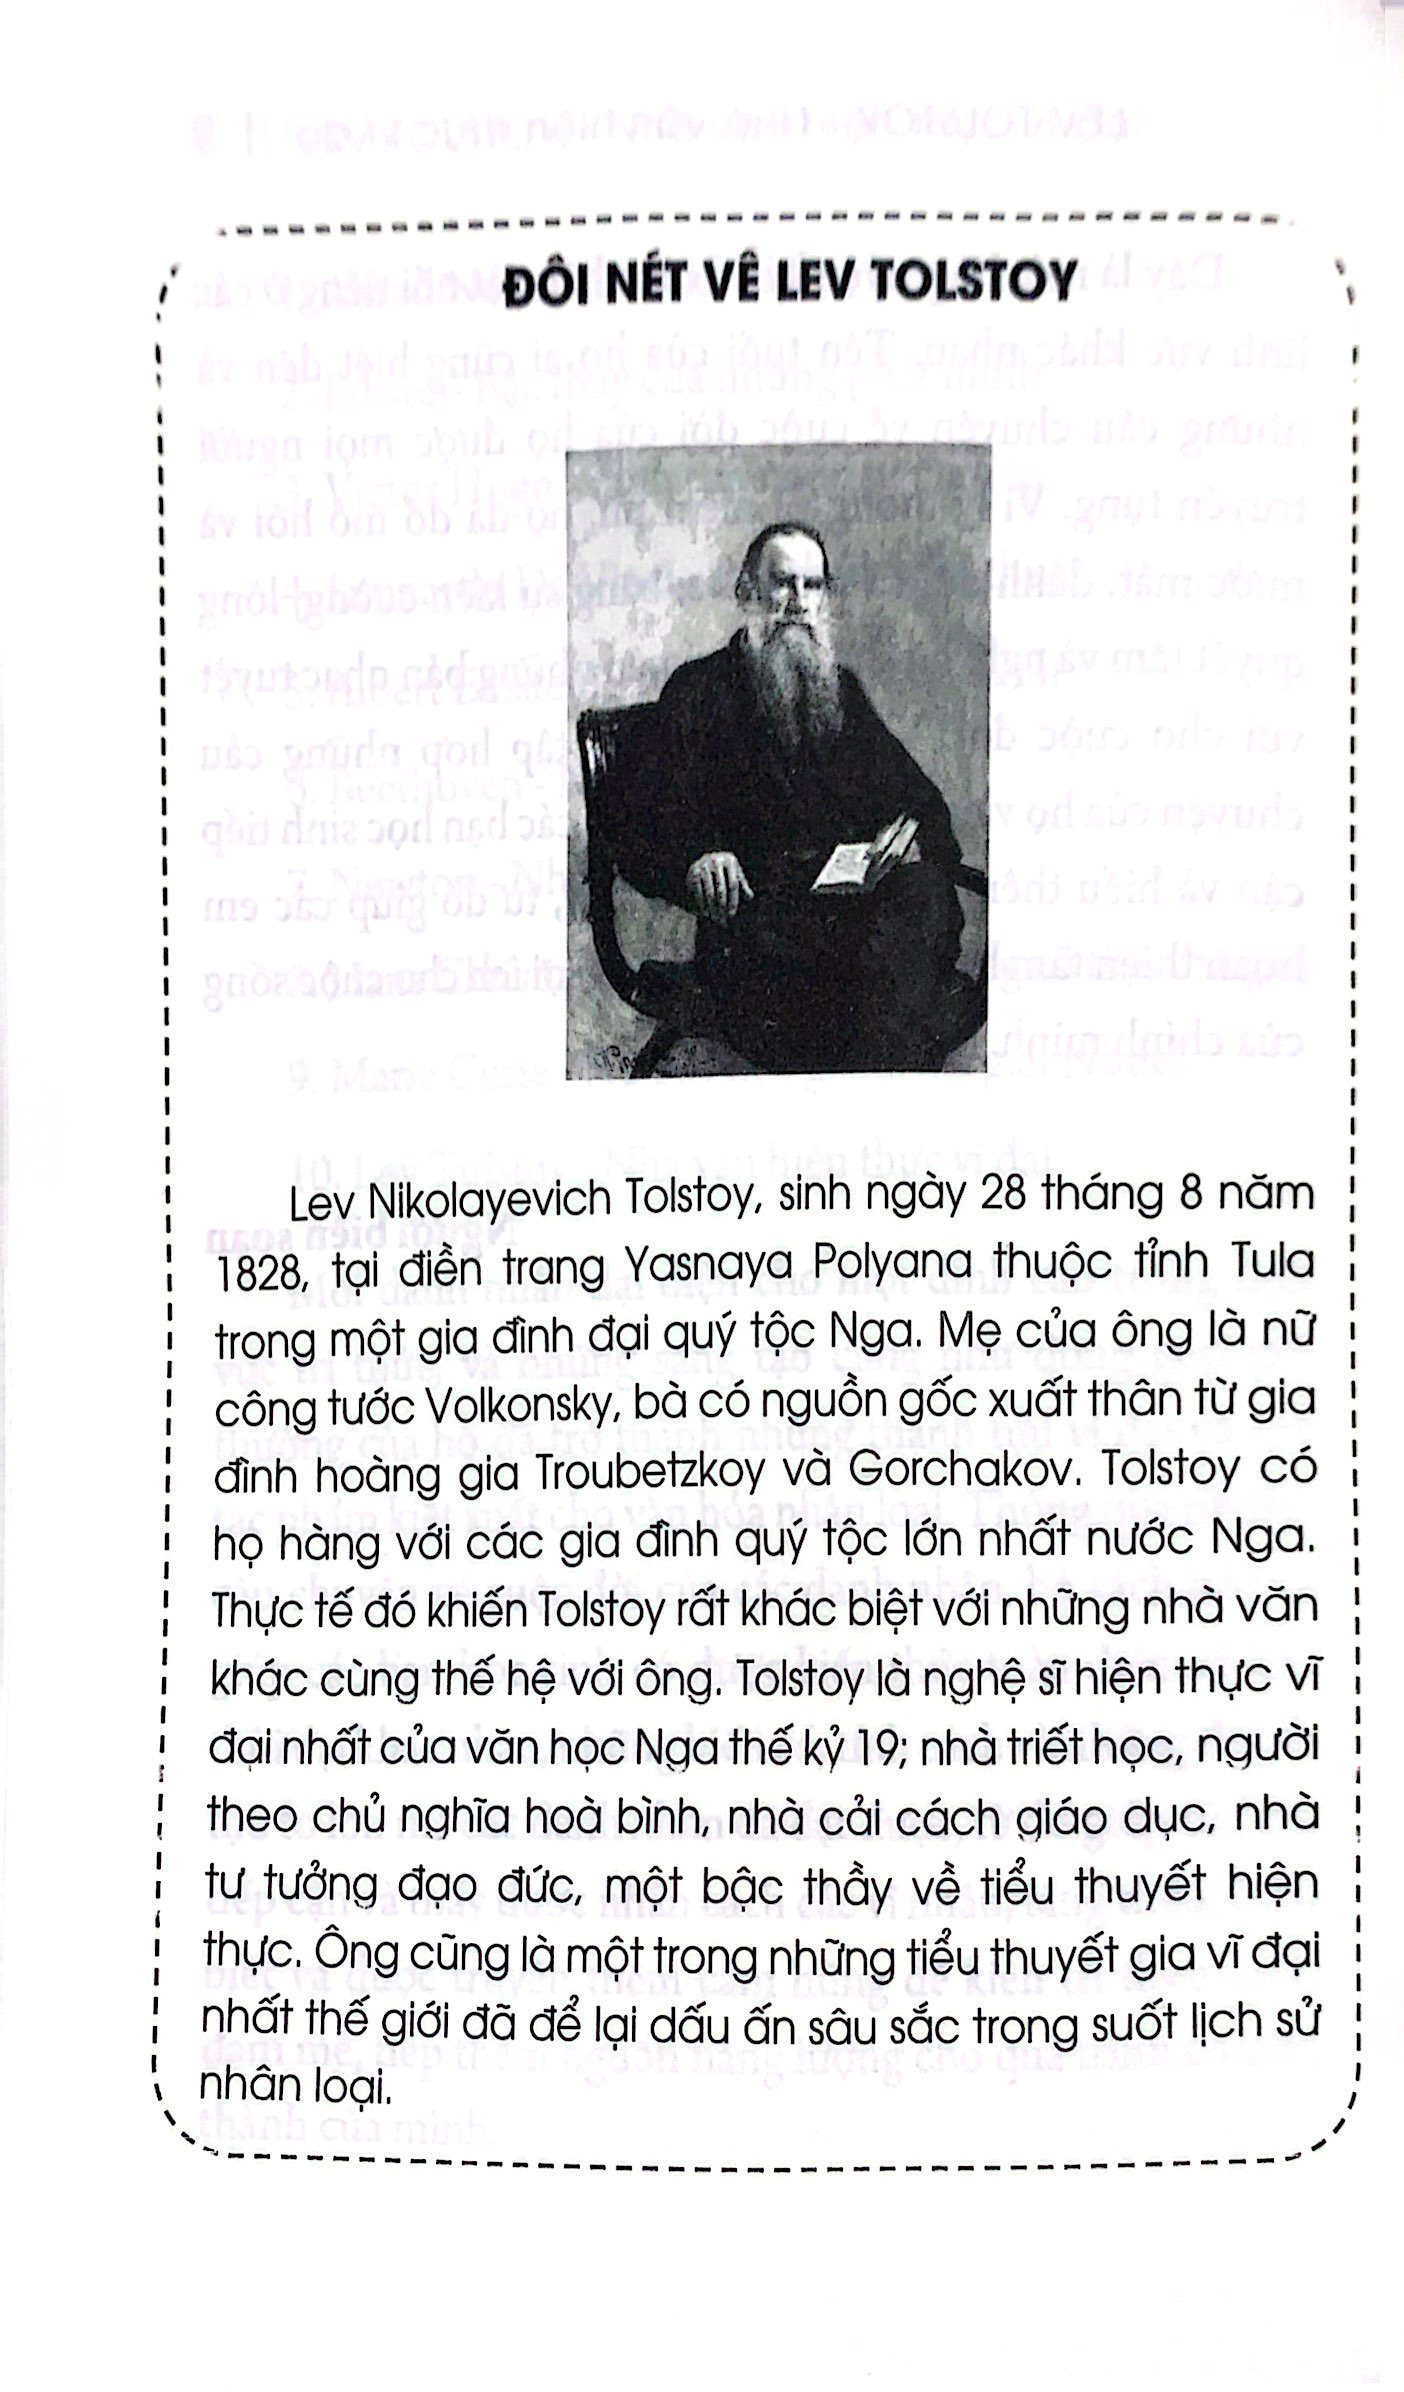 Kể Chuyện Thiên Tài Nổi Tiếng - Lev Tolstoy - Nhà Văn Hiện Thực Vĩ Đại PDF